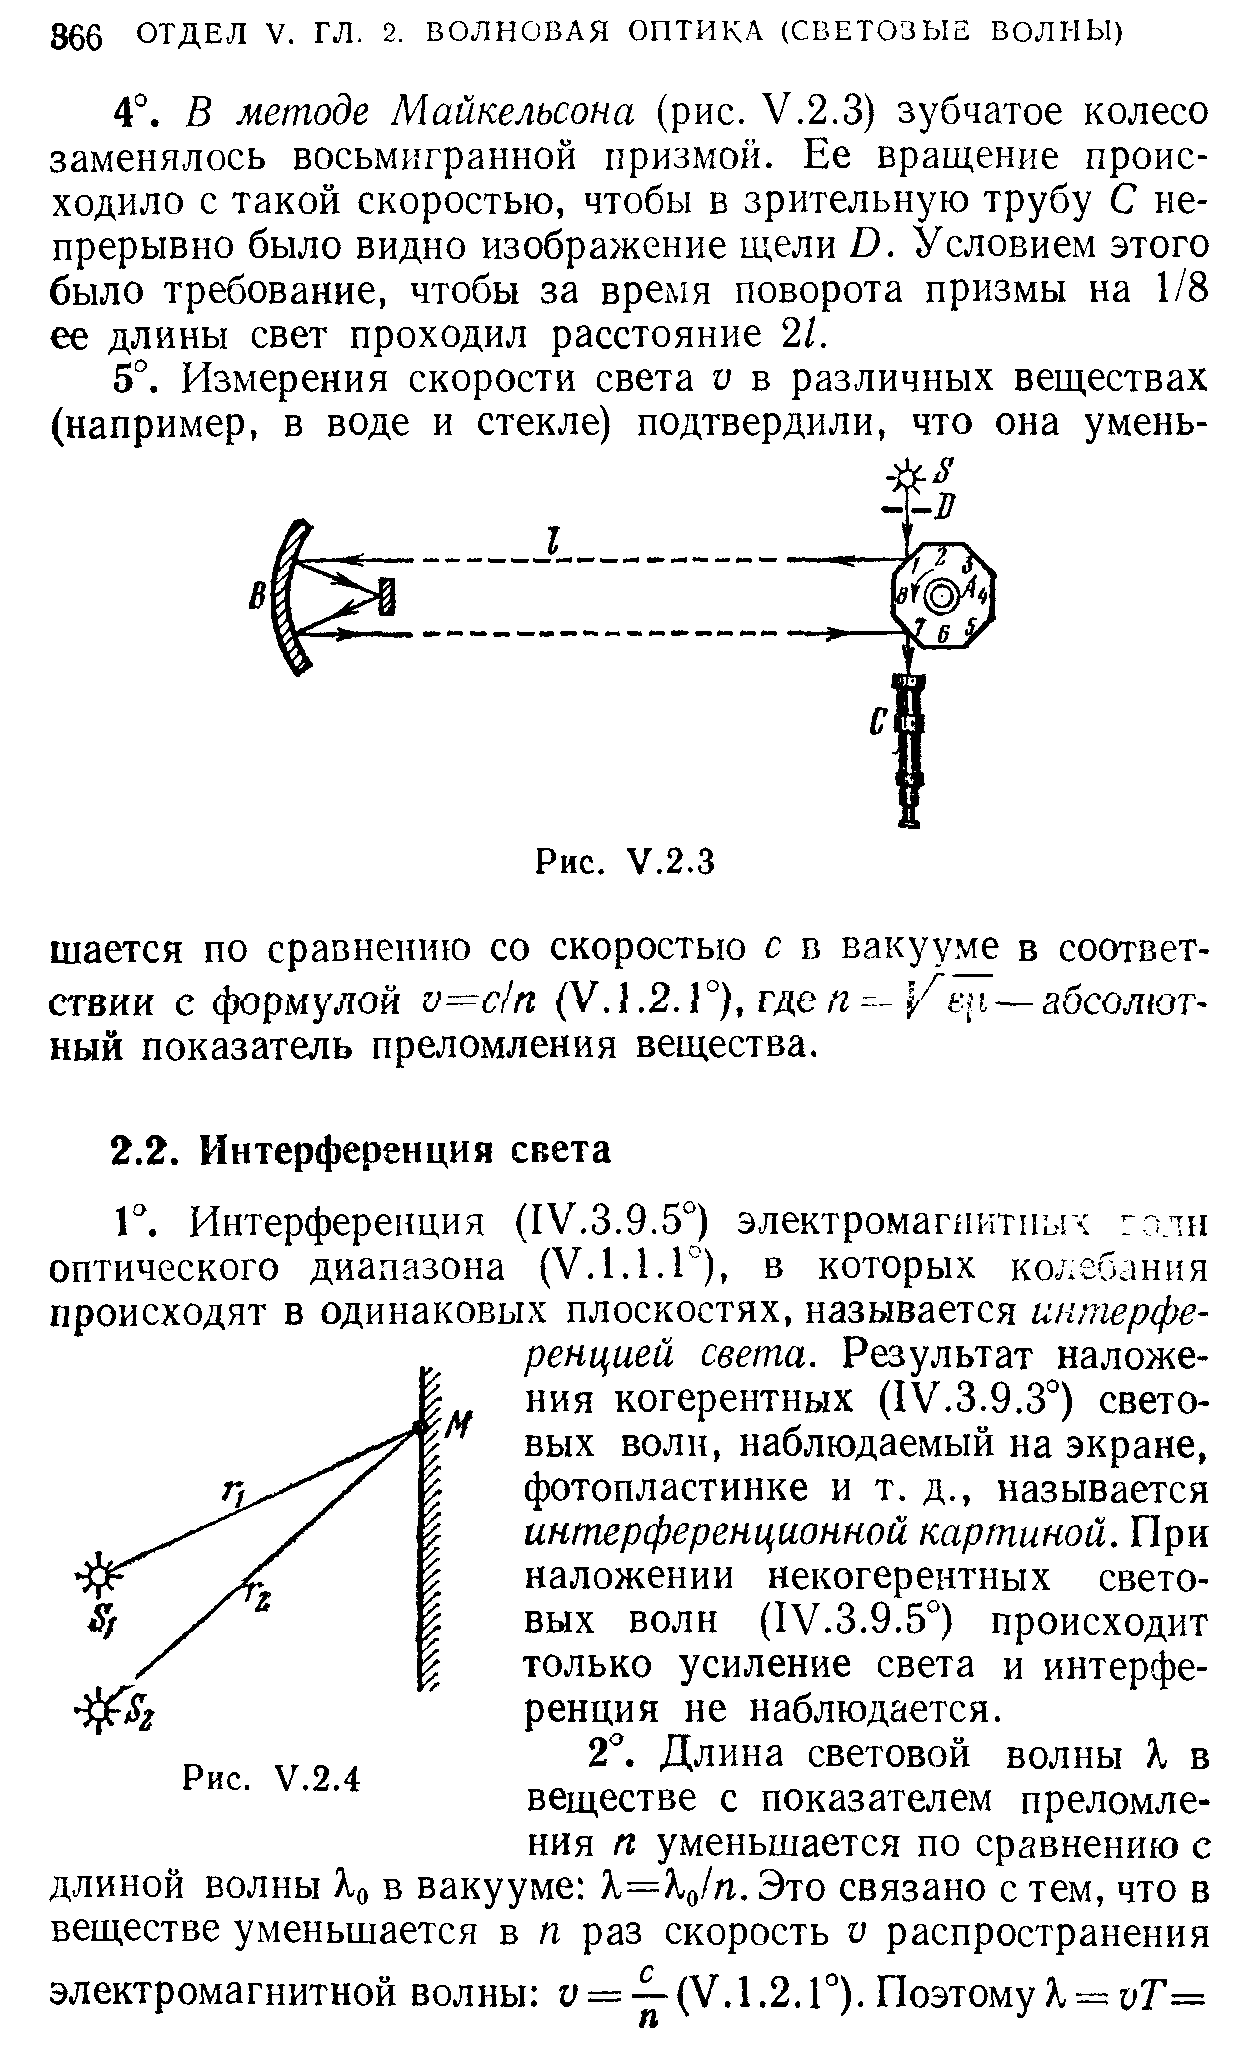 Интерференция (IV.3.9.5°) электромагхичтпых г сан оптического диапазона (У.1.1.Г), в которых колебания происходят в одинаковых плоскостях, называется интерференцией света. Результат наложения когерентных (IV.3.9.3°) световых волн, наблюдаемый на экране, фотопластинке и т. д., называется интерференционной картиной. При наложении некогерентных световых волн (IV.3.9.5°) происходит только усиление света и интерференция не наблюдается.
